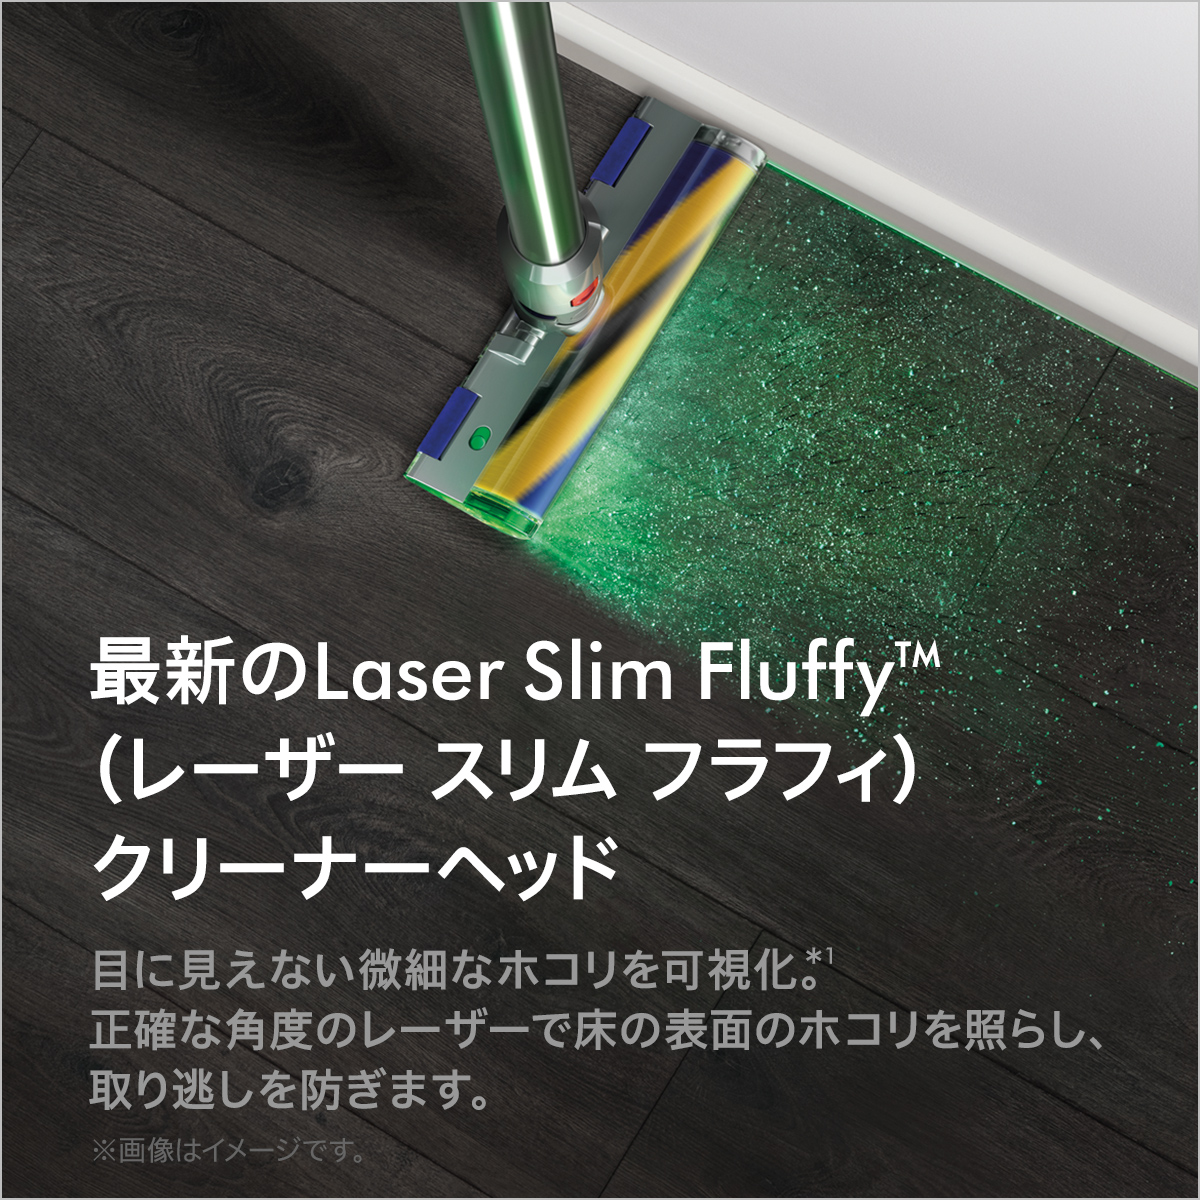 信託 らくらく生活Dyson V12 Detect Slim Fluffy SV20 FF N ienomat.com.br